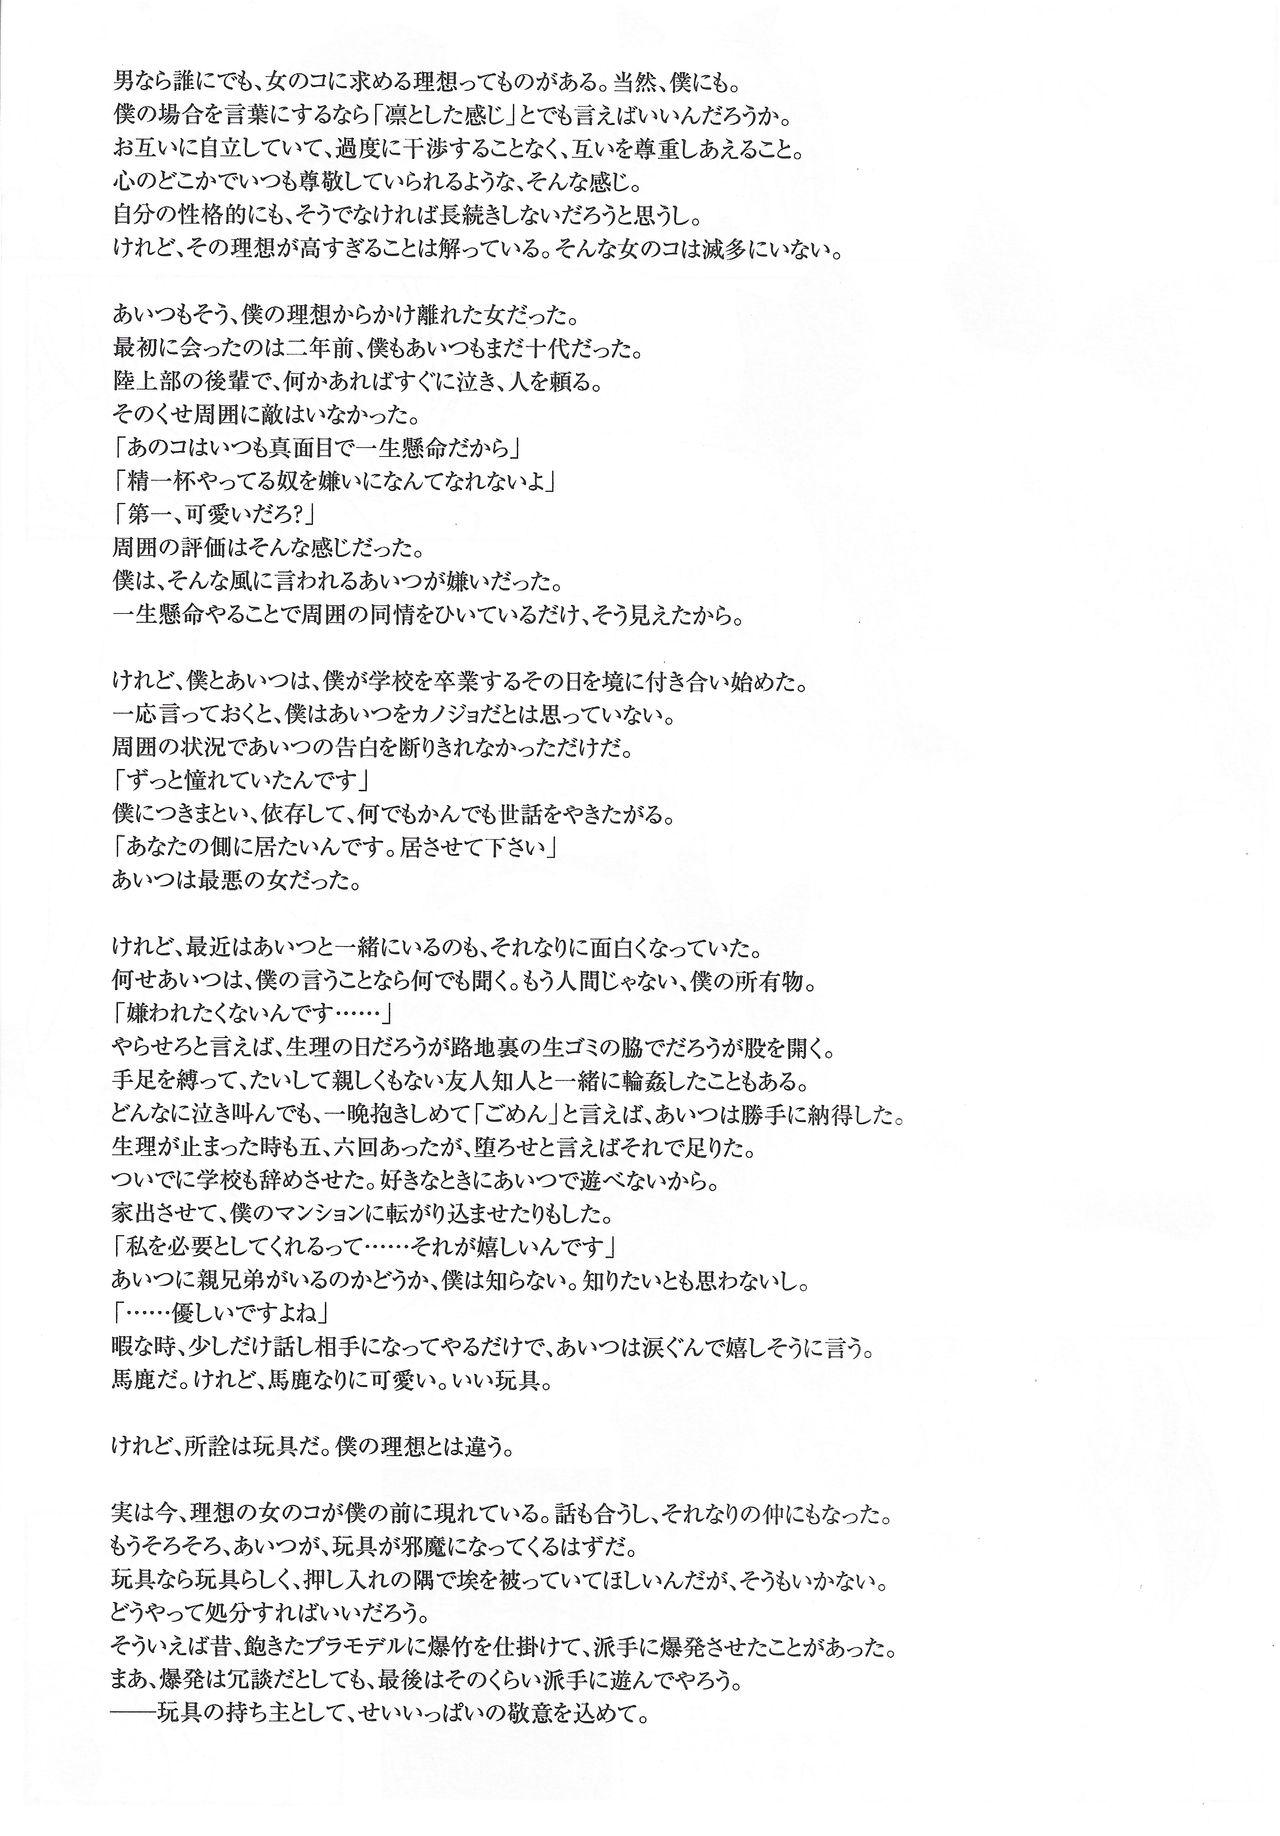 Arisu no Denchi Bakudan Vol. 20 24